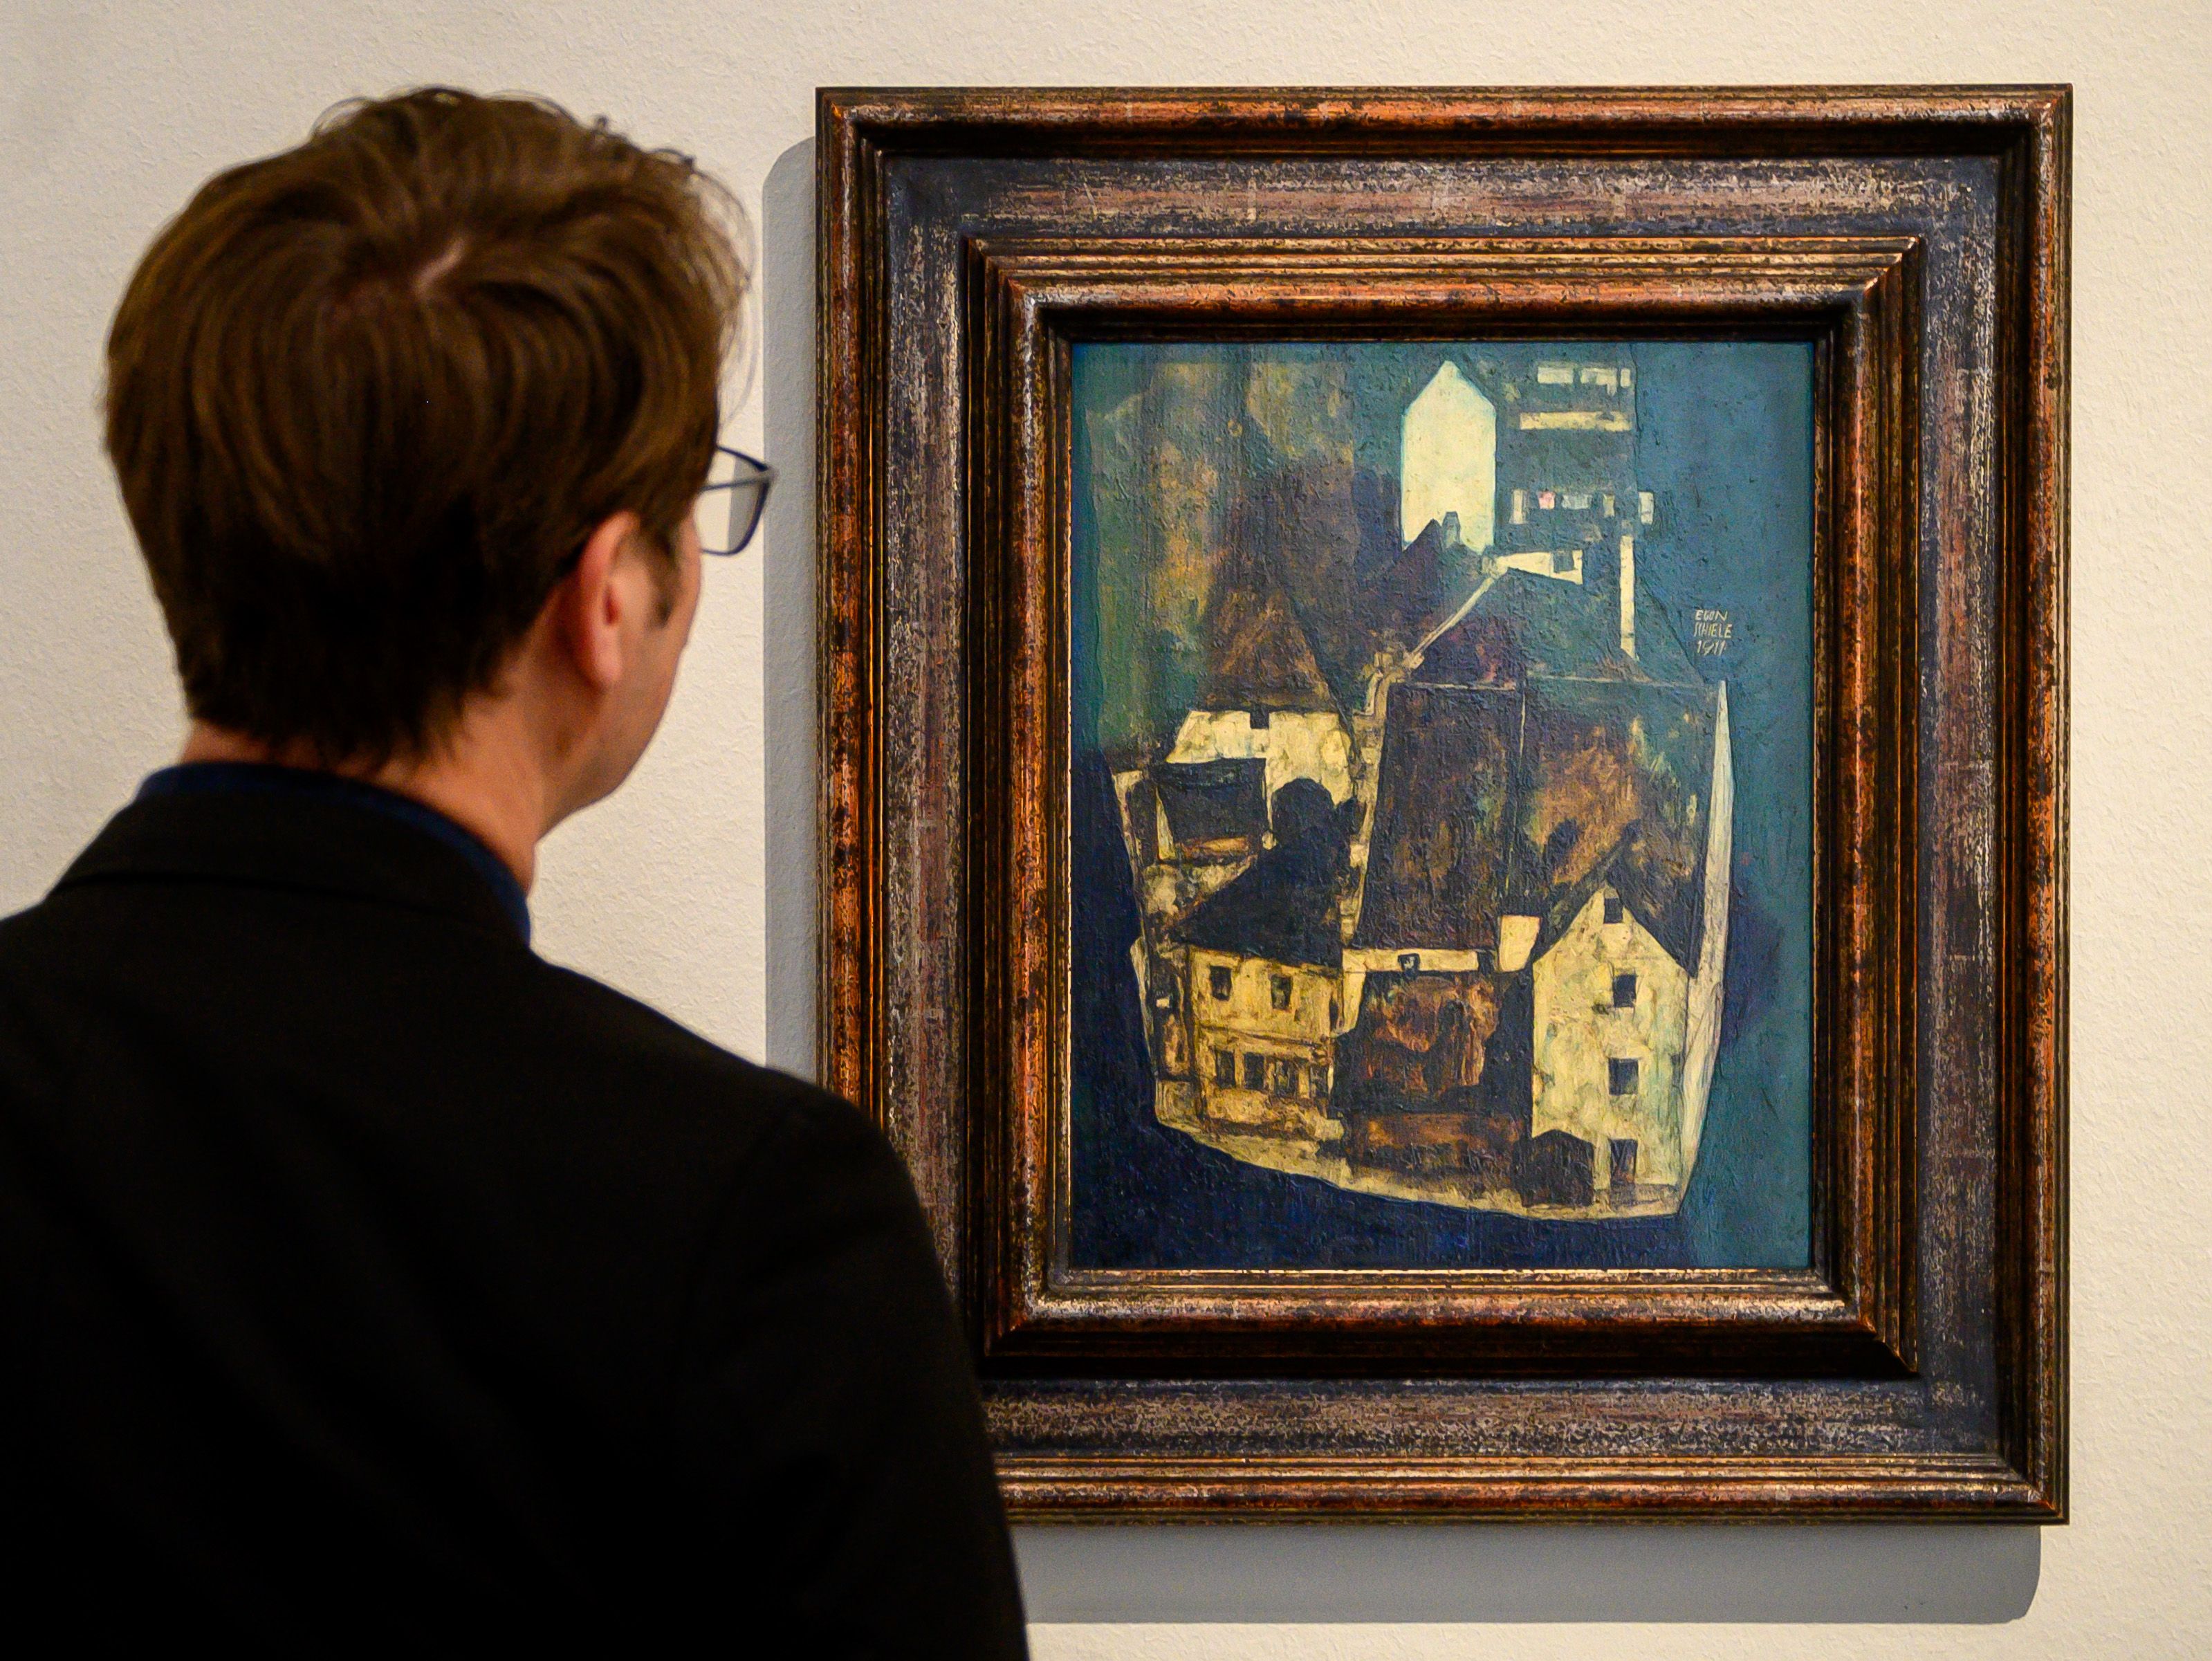 Des oeuvres de Schiele volées par les nazis? L'Autriche nie en bloc